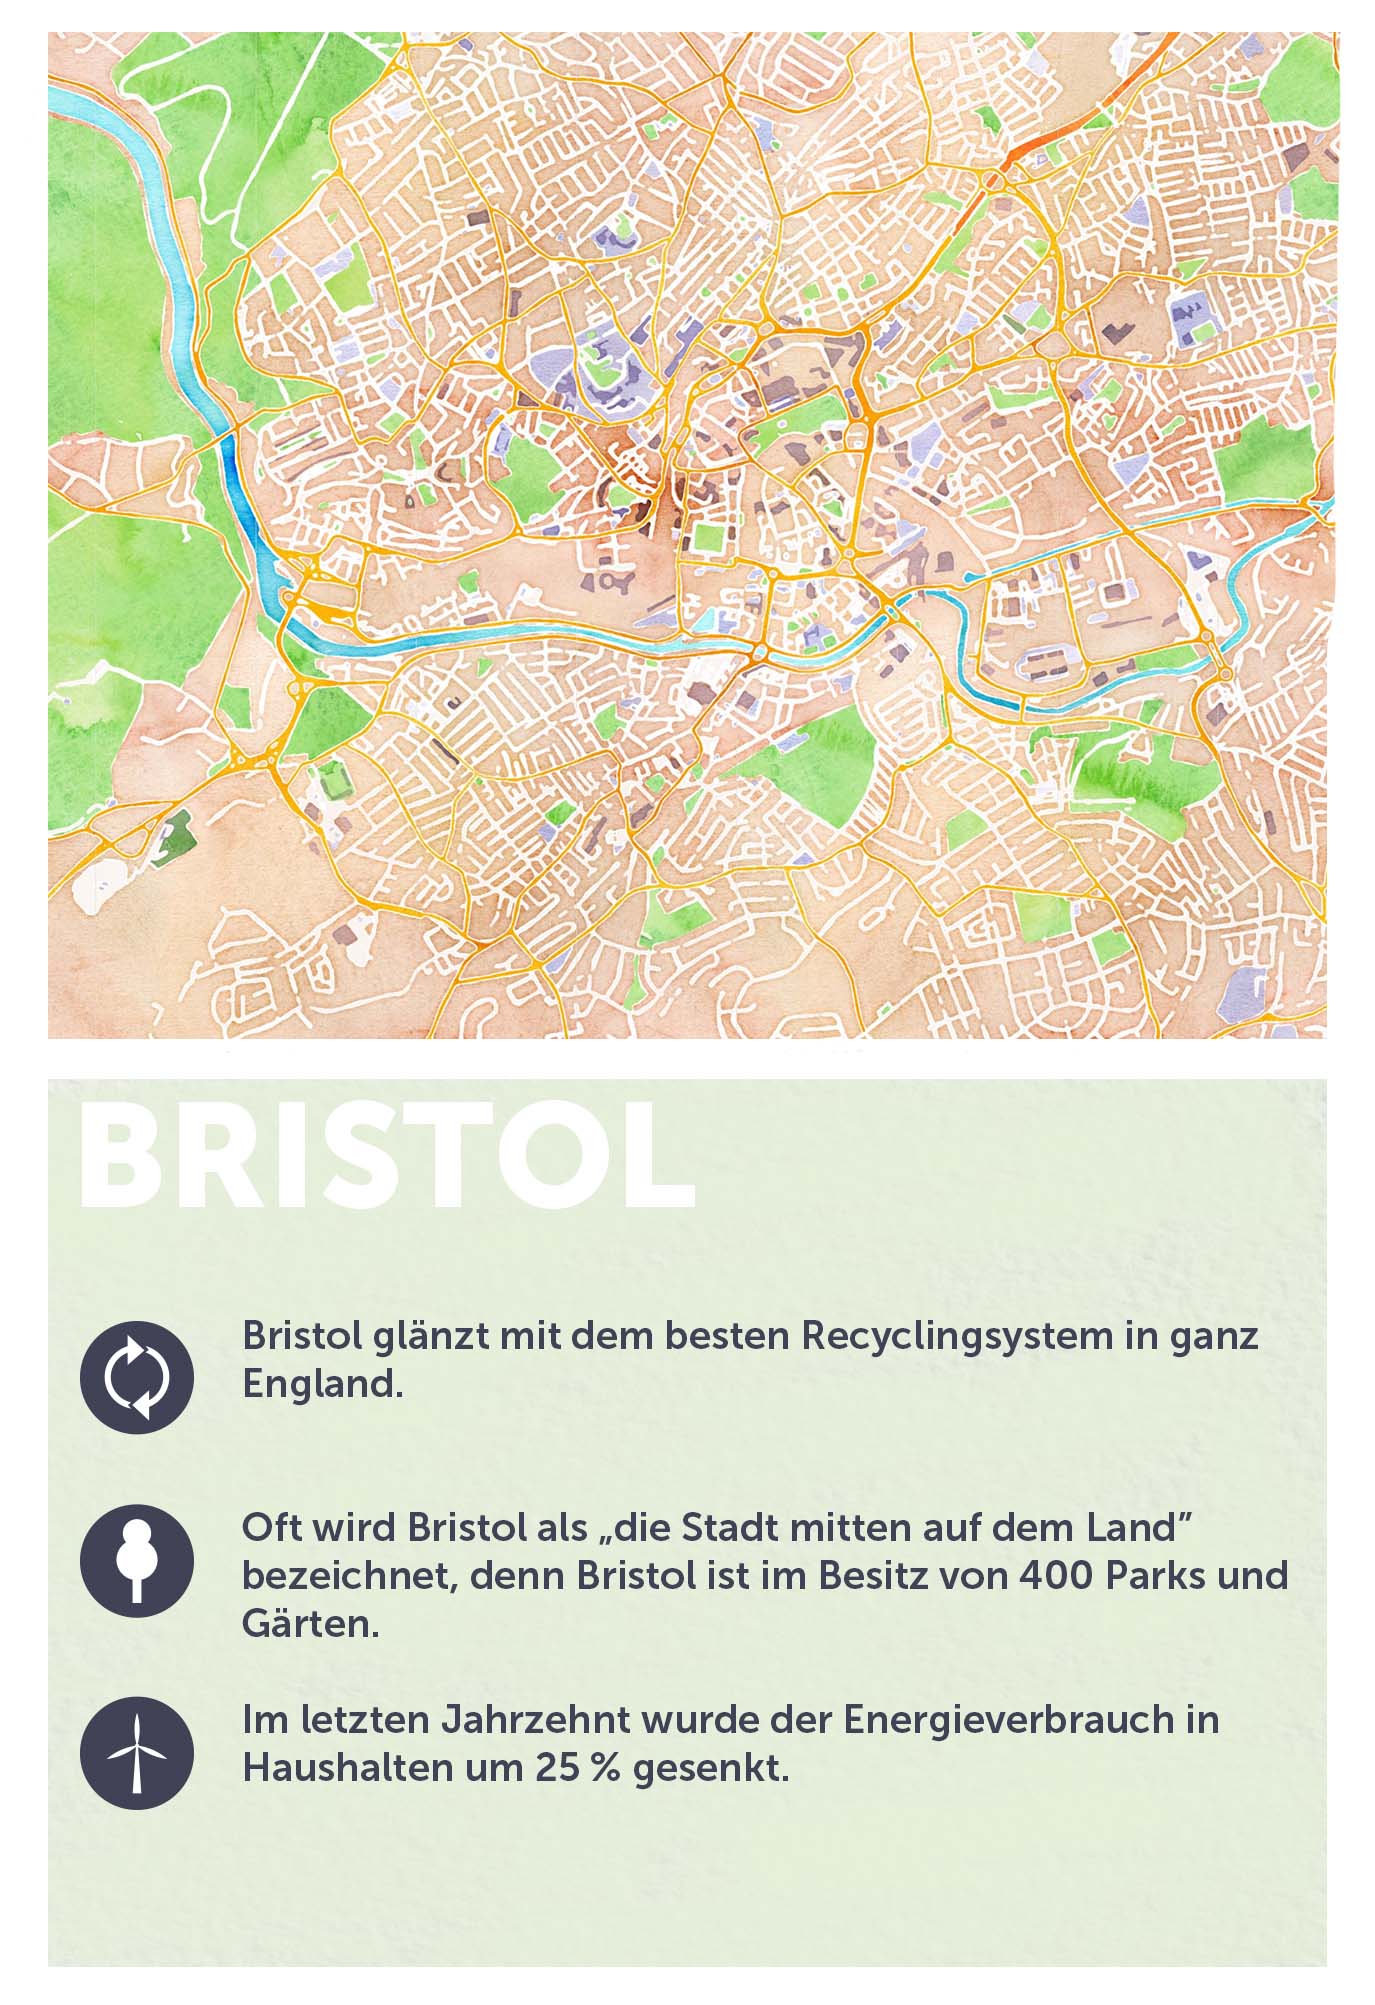 Bristol grüne Stadt in Europa